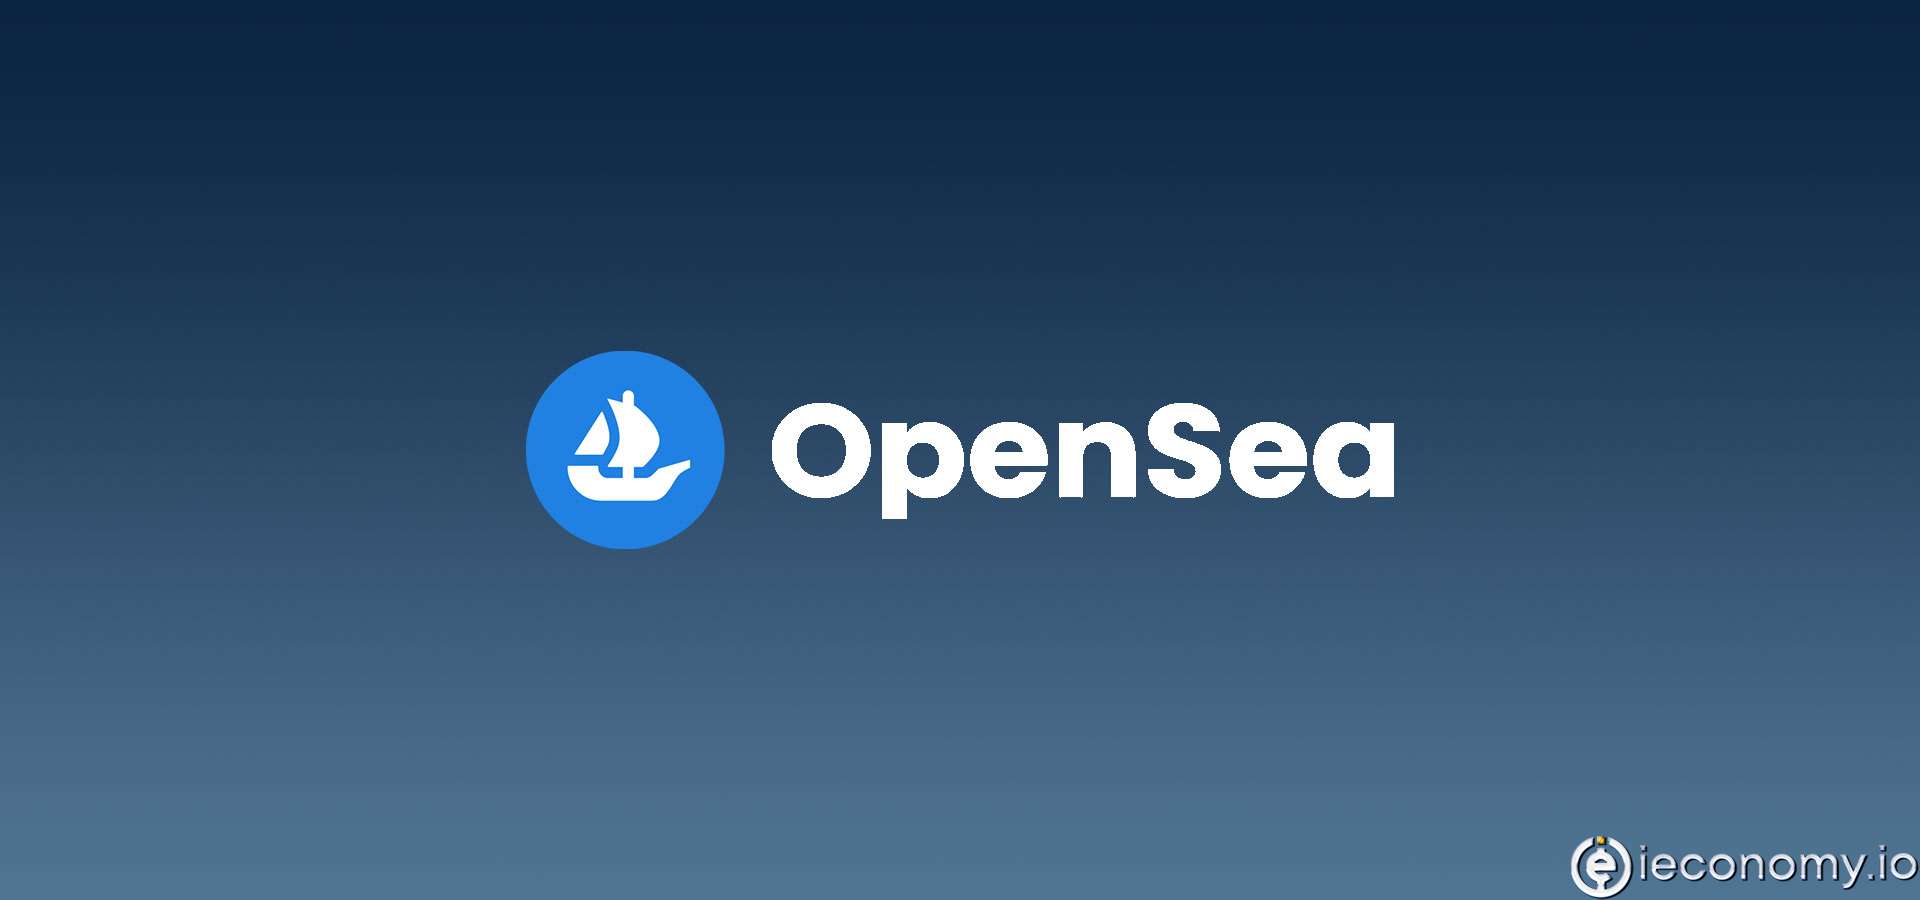 OpenSea's Discord Account Has Been Hacked